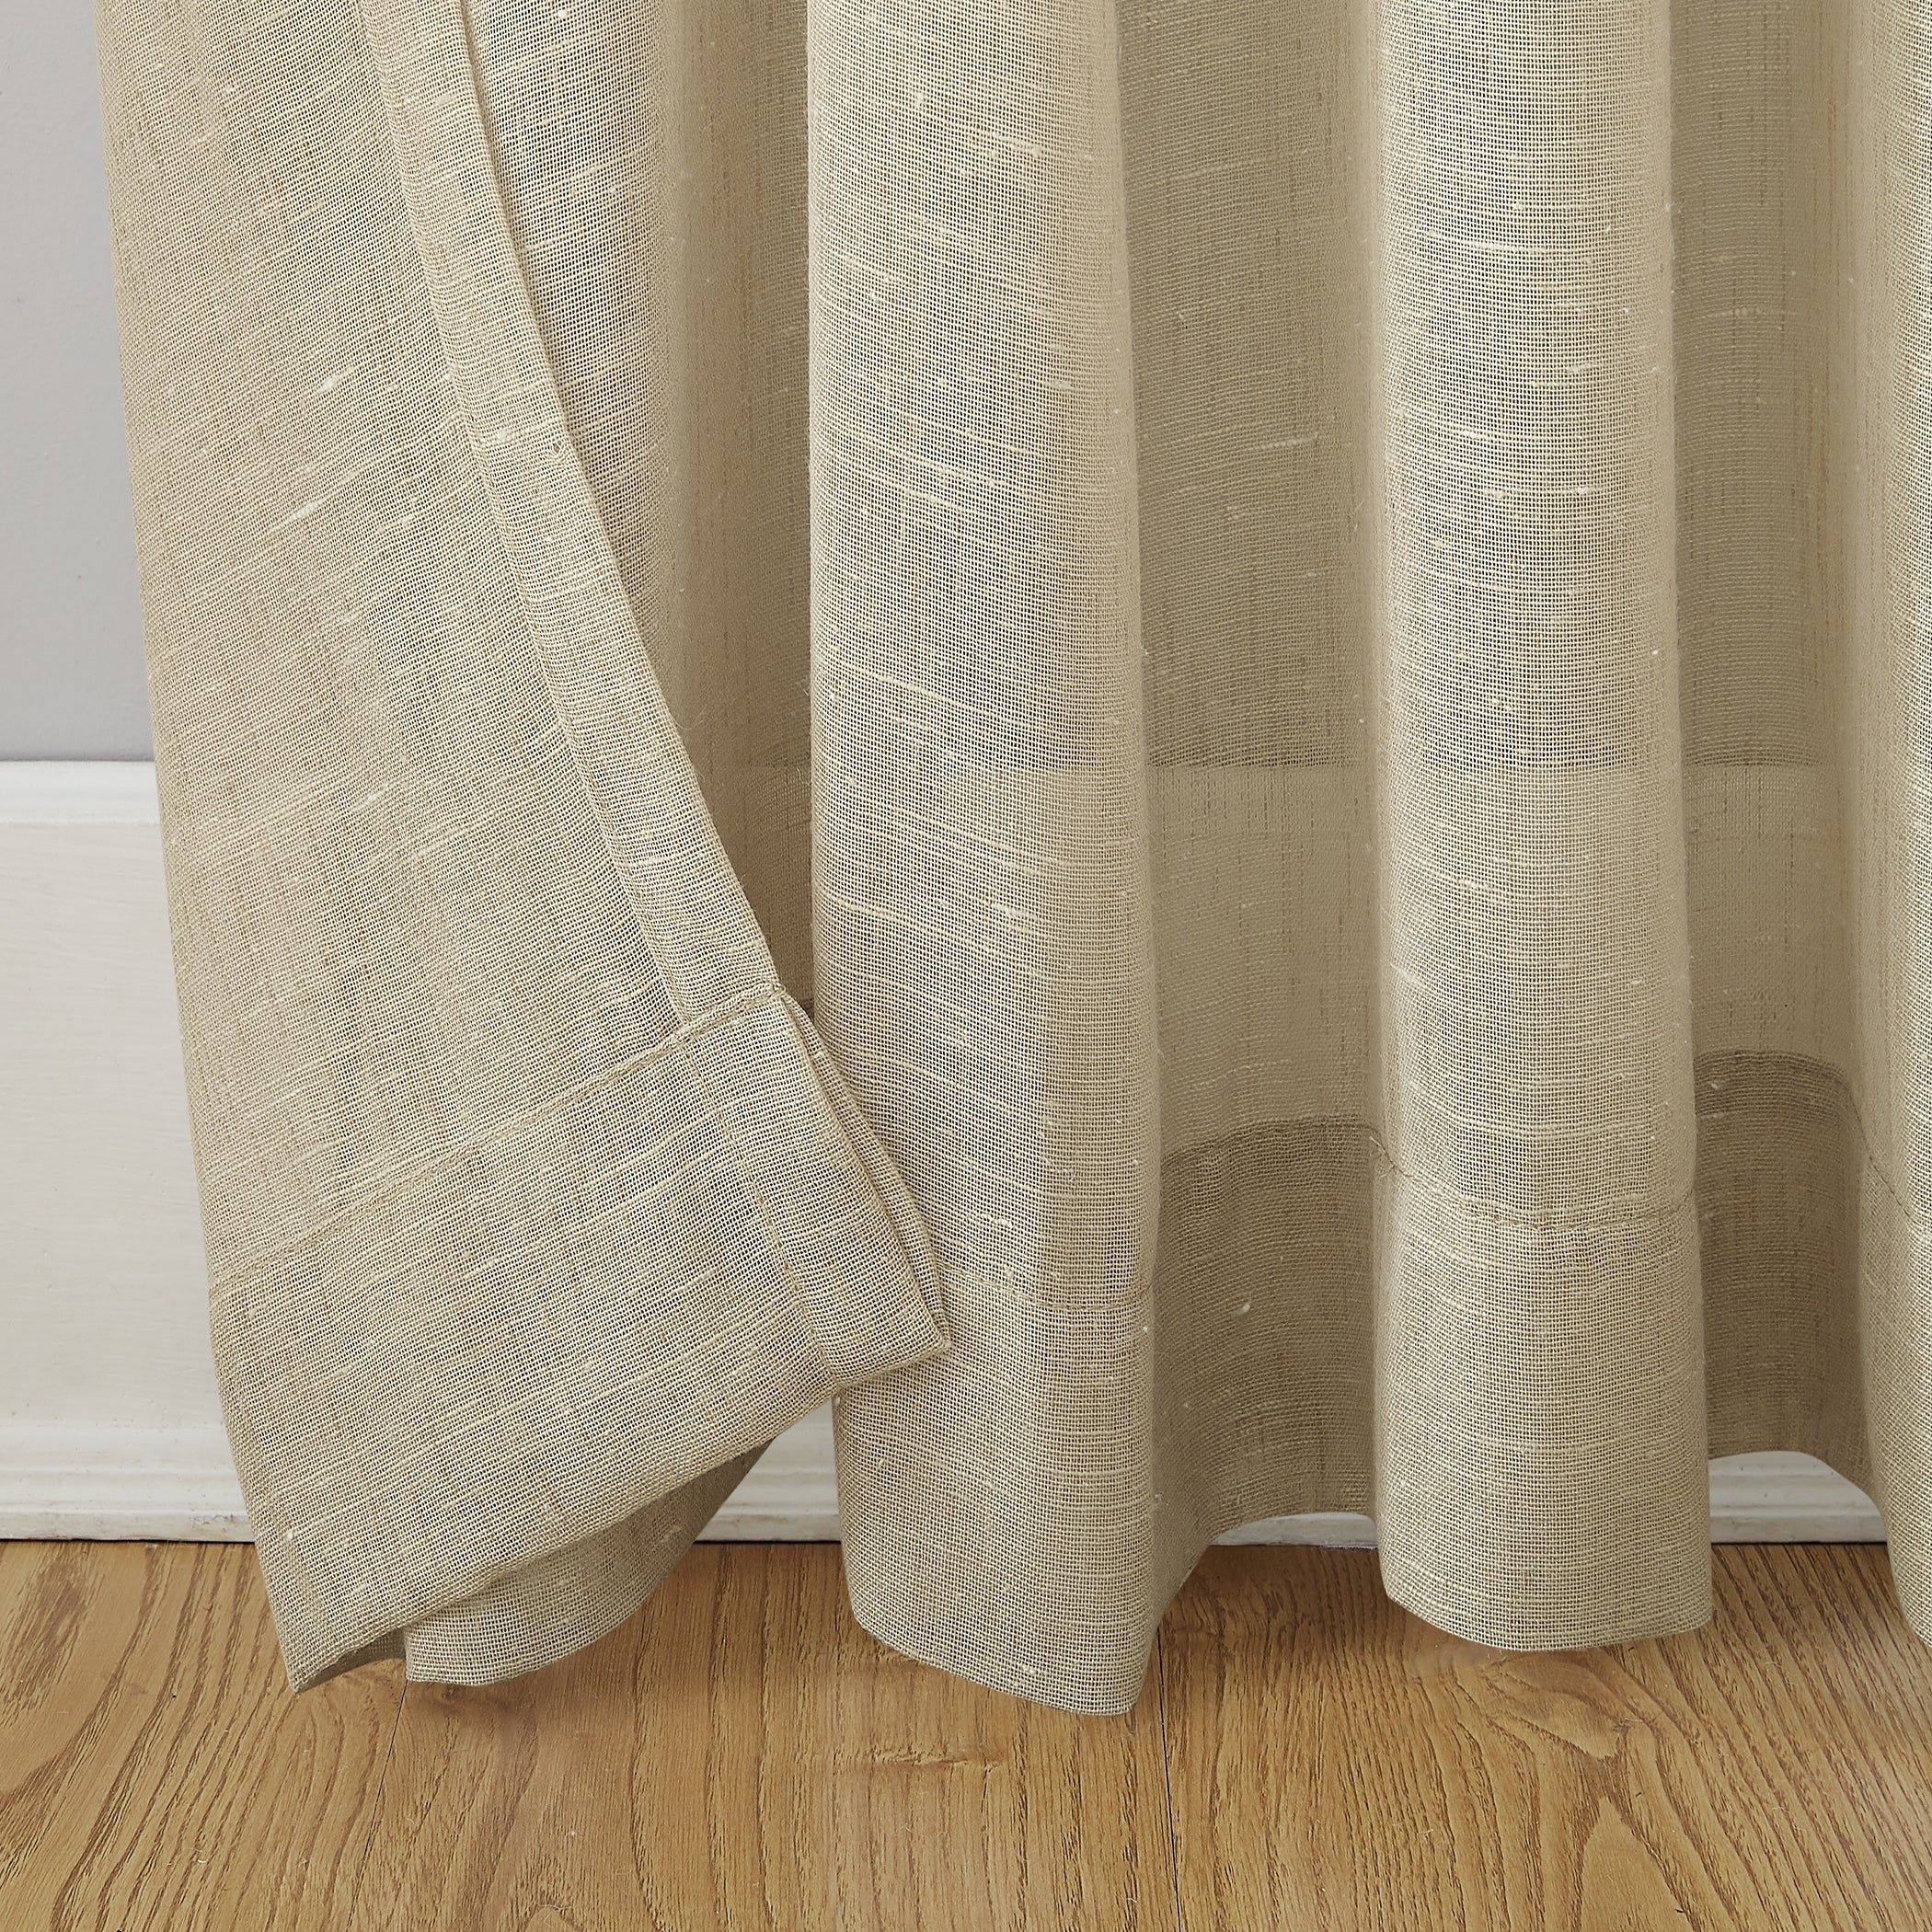 Archaeo Slub Textured Linen Blend Grommet Top Curtain With Regard To Archaeo Slub Textured Linen Blend Grommet Top Curtains (View 3 of 20)